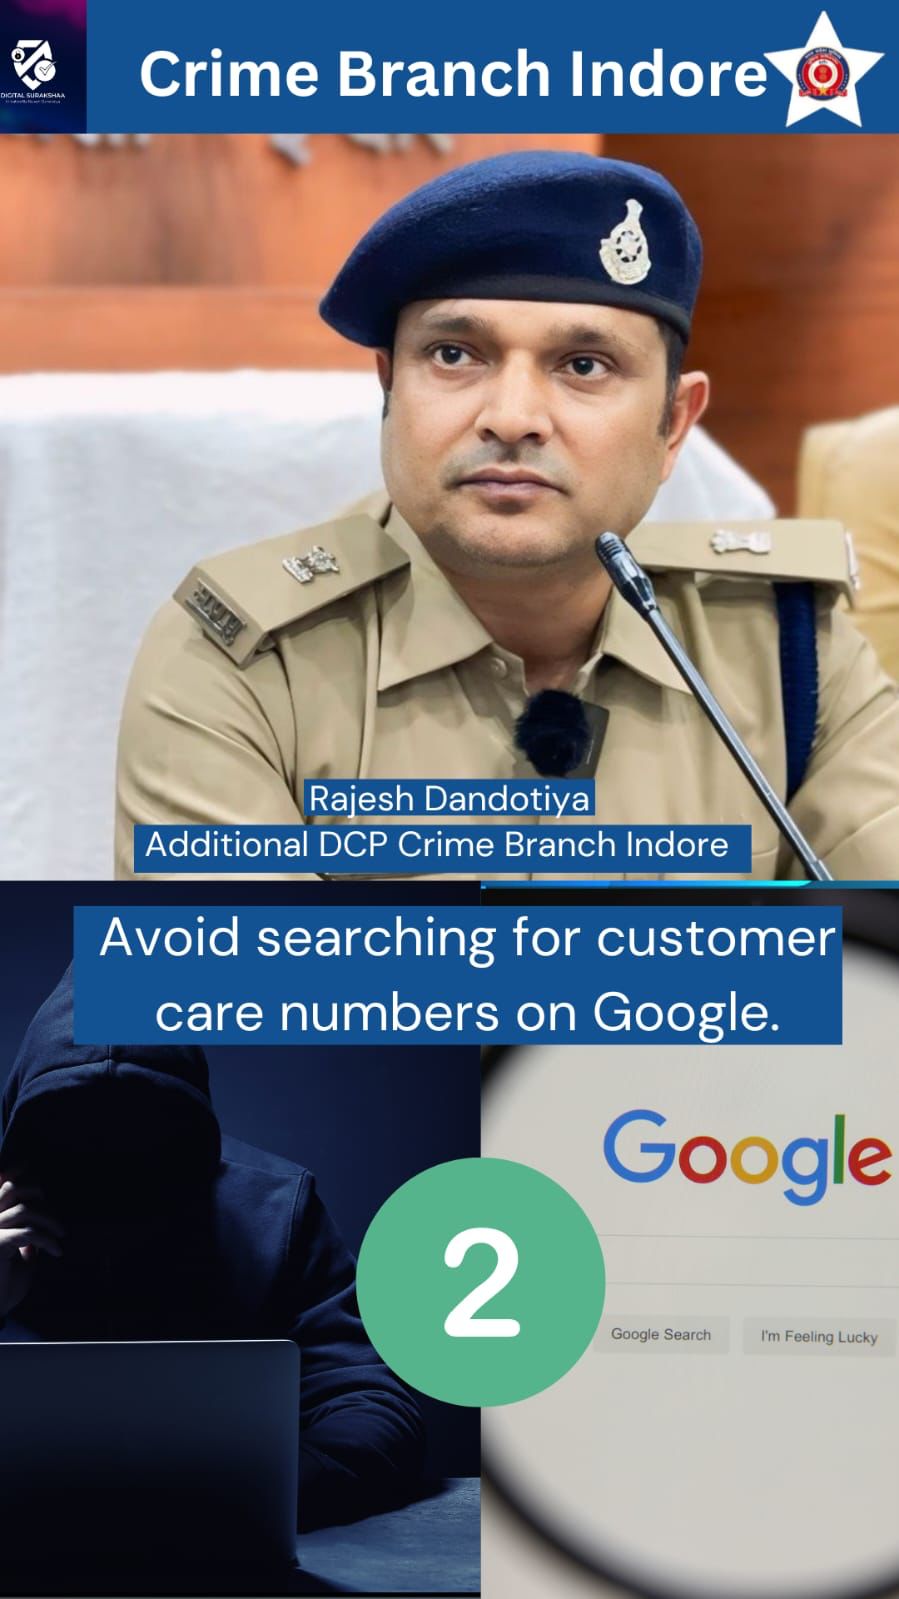 क्राइम ब्रांच इंदौर ने ऑनलाइन ठगी से बचने के लिए Google हेल्पलाइन नंबर जारी किया।